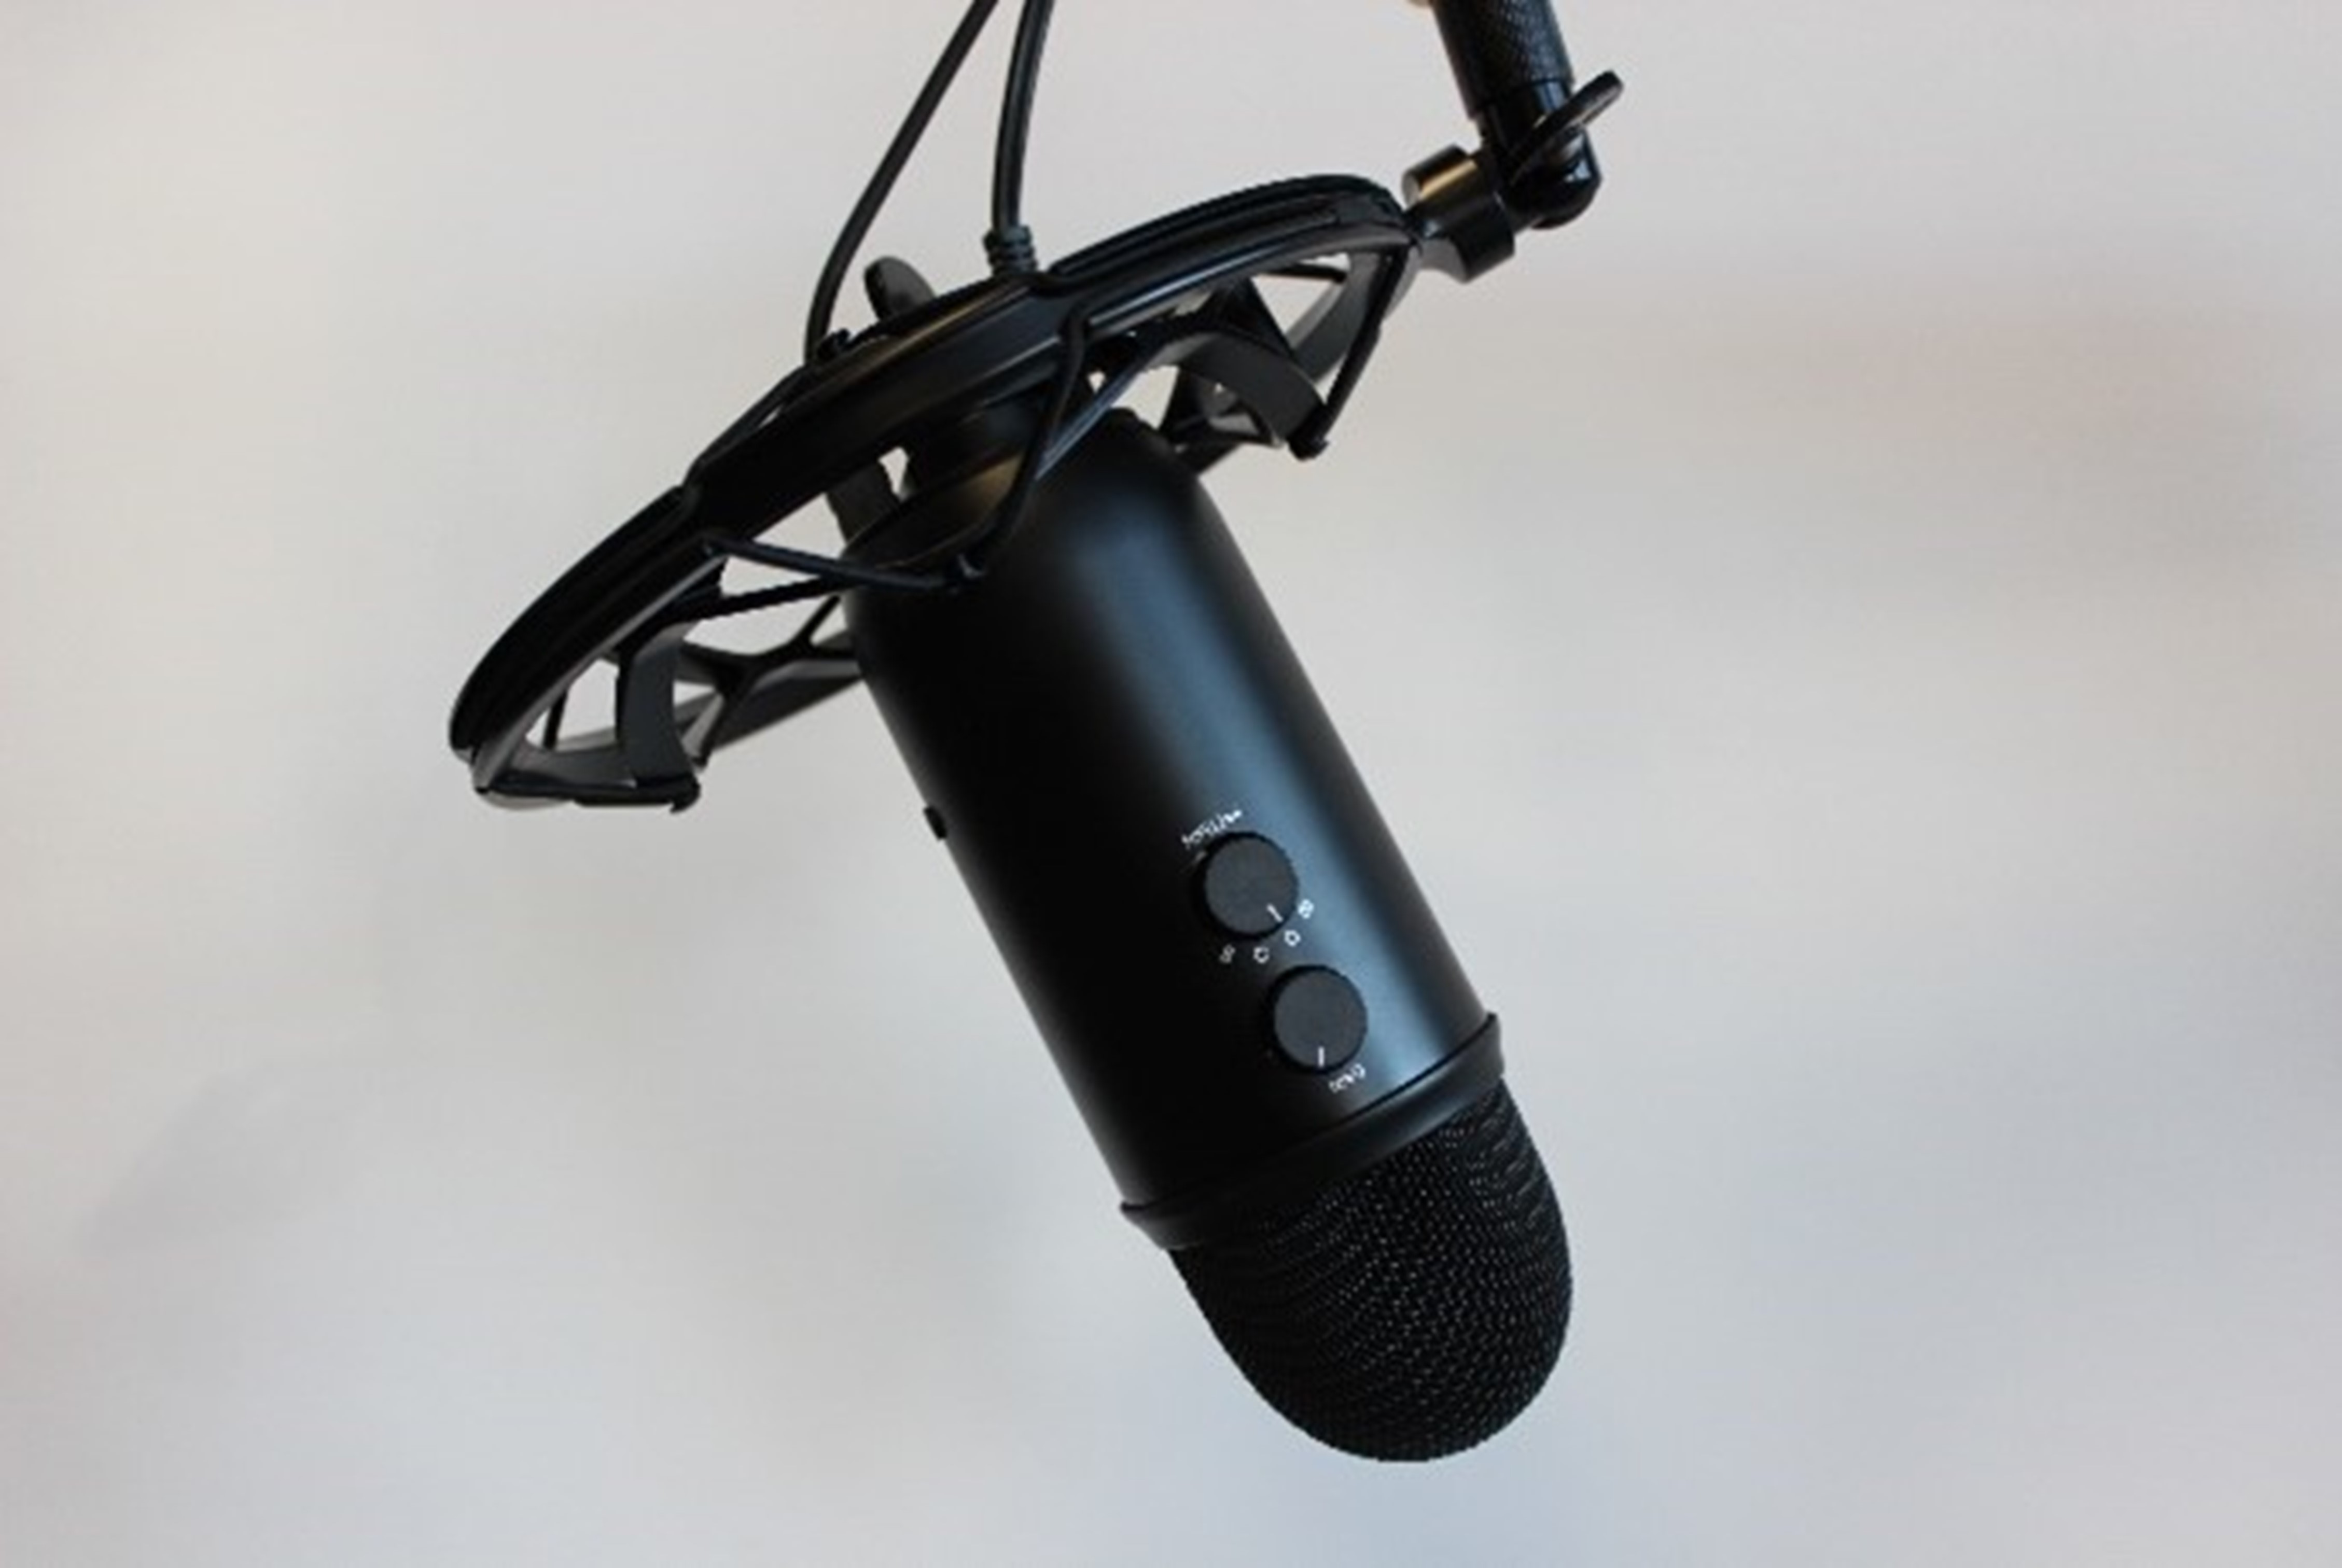 Mikrofon an einer Befestigung